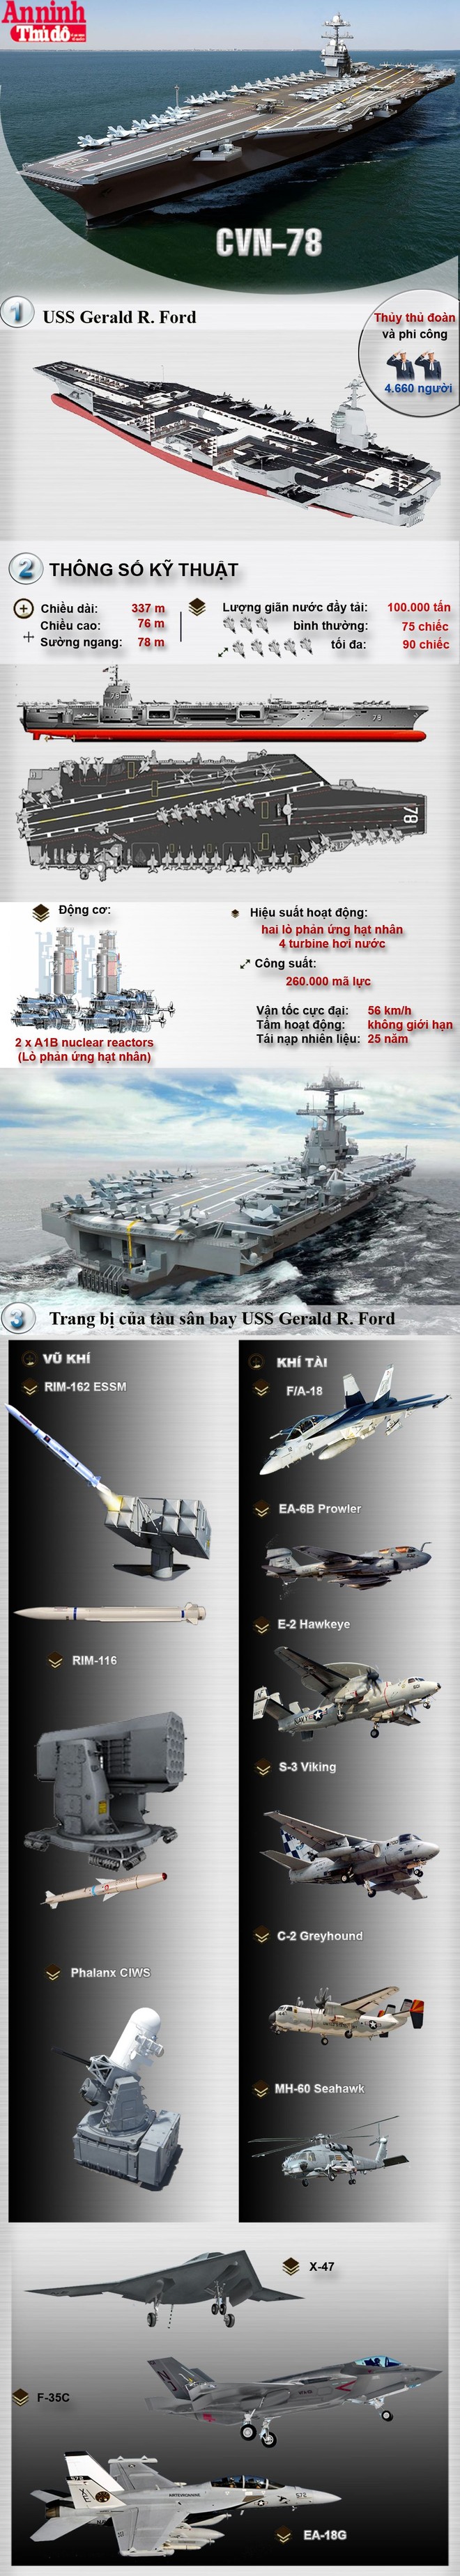 [Infographic] USS Gerald R Ford - Siêu tàu sân bay mạnh nhất thế giới